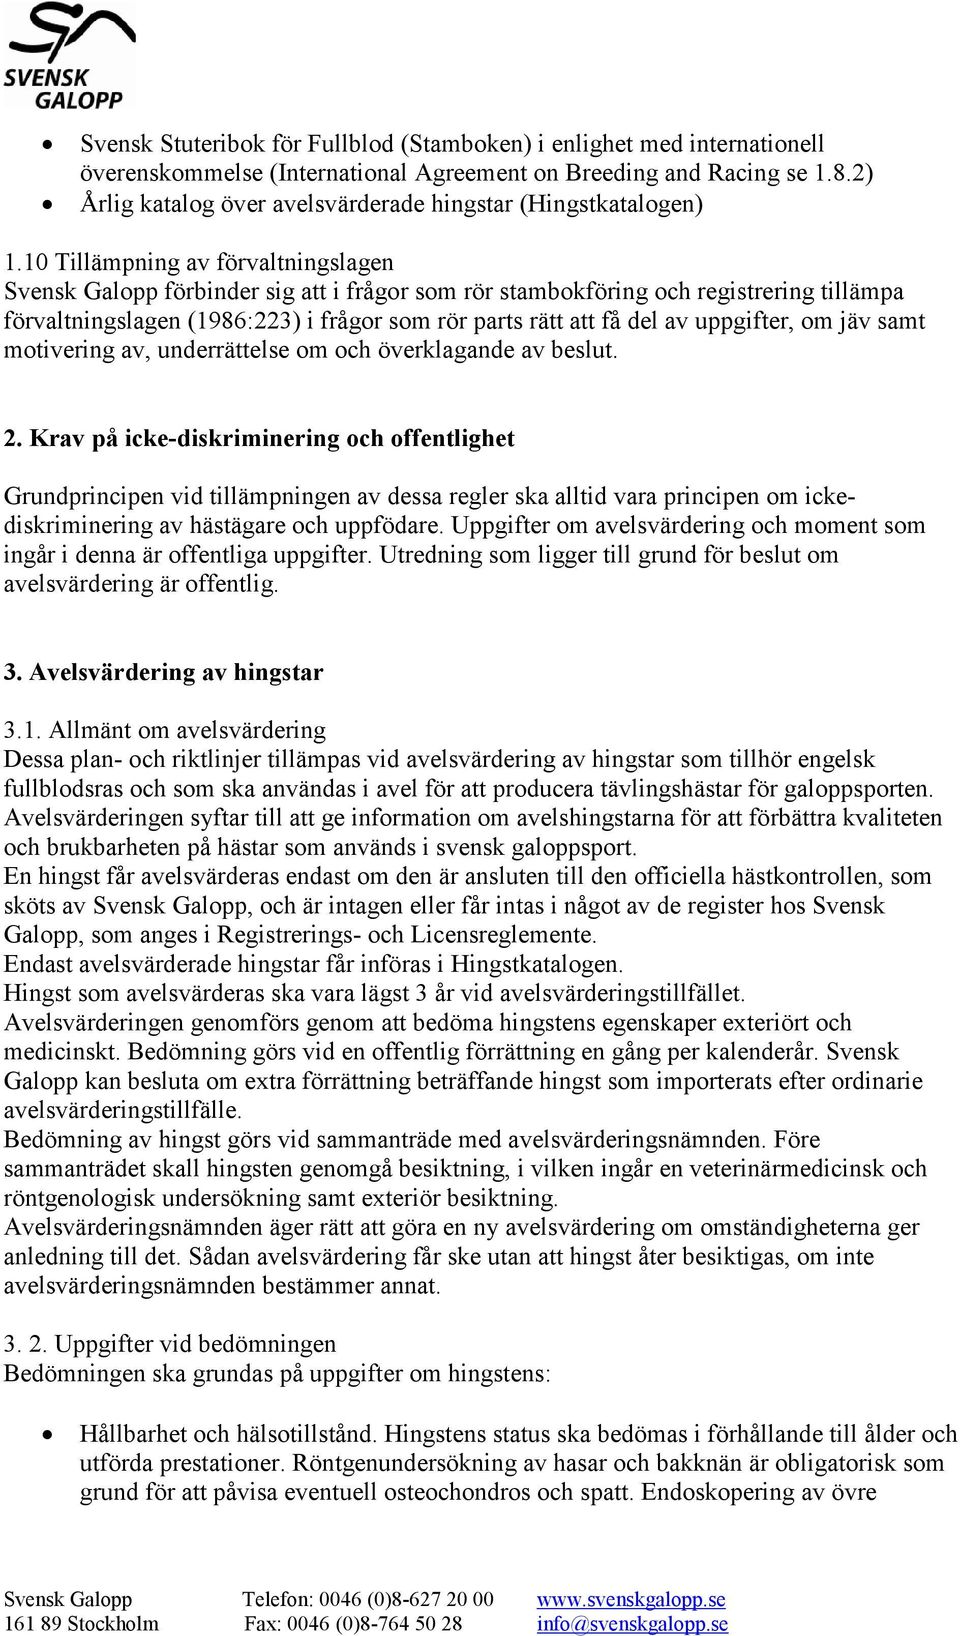 10 Tillämpning av förvaltningslagen Svensk Galopp förbinder sig att i frågor som rör stambokföring och registrering tillämpa förvaltningslagen (1986:223) i frågor som rör parts rätt att få del av